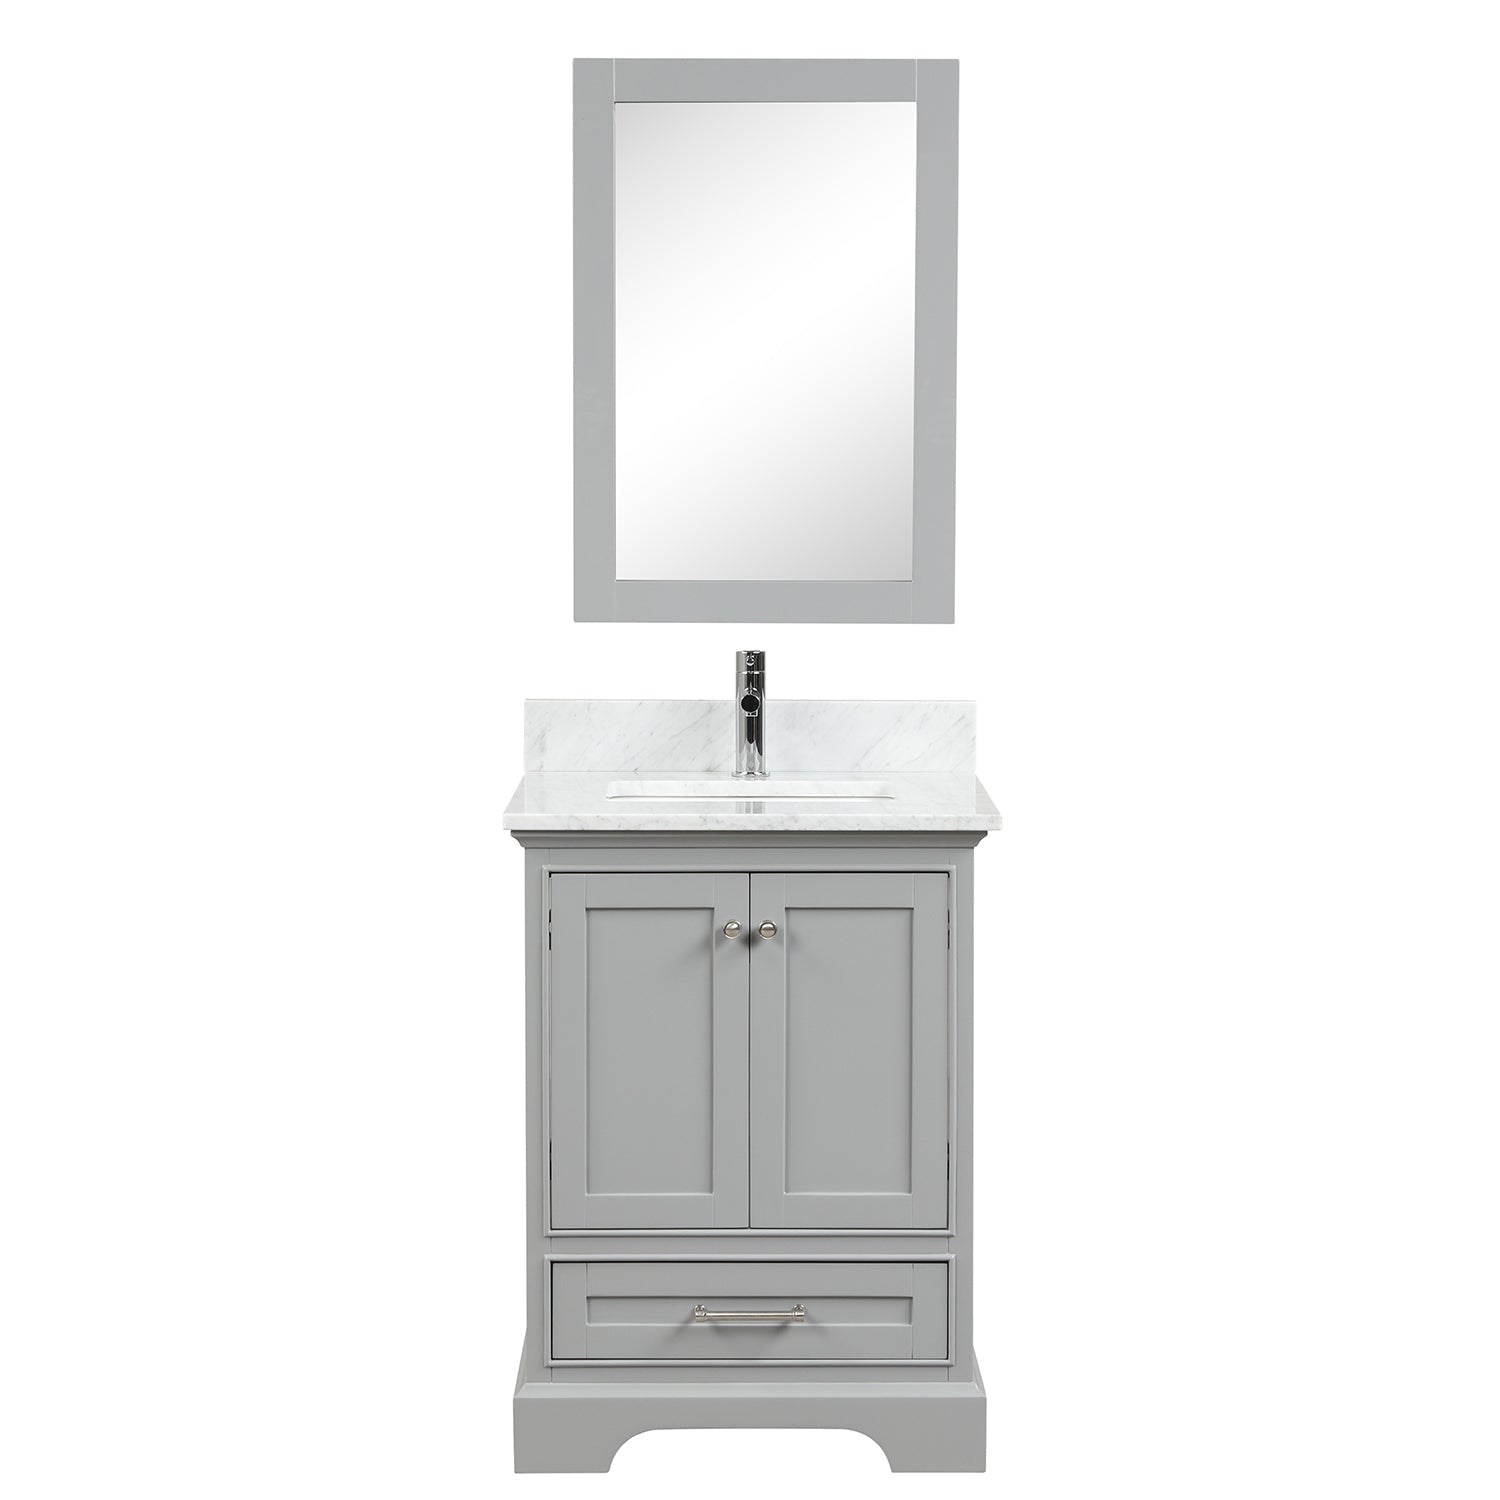 Copenhagen 24″ Bathroom Vanity with Marble Countertop and Ceramic Sink - Contemporary Bathroom Vanity